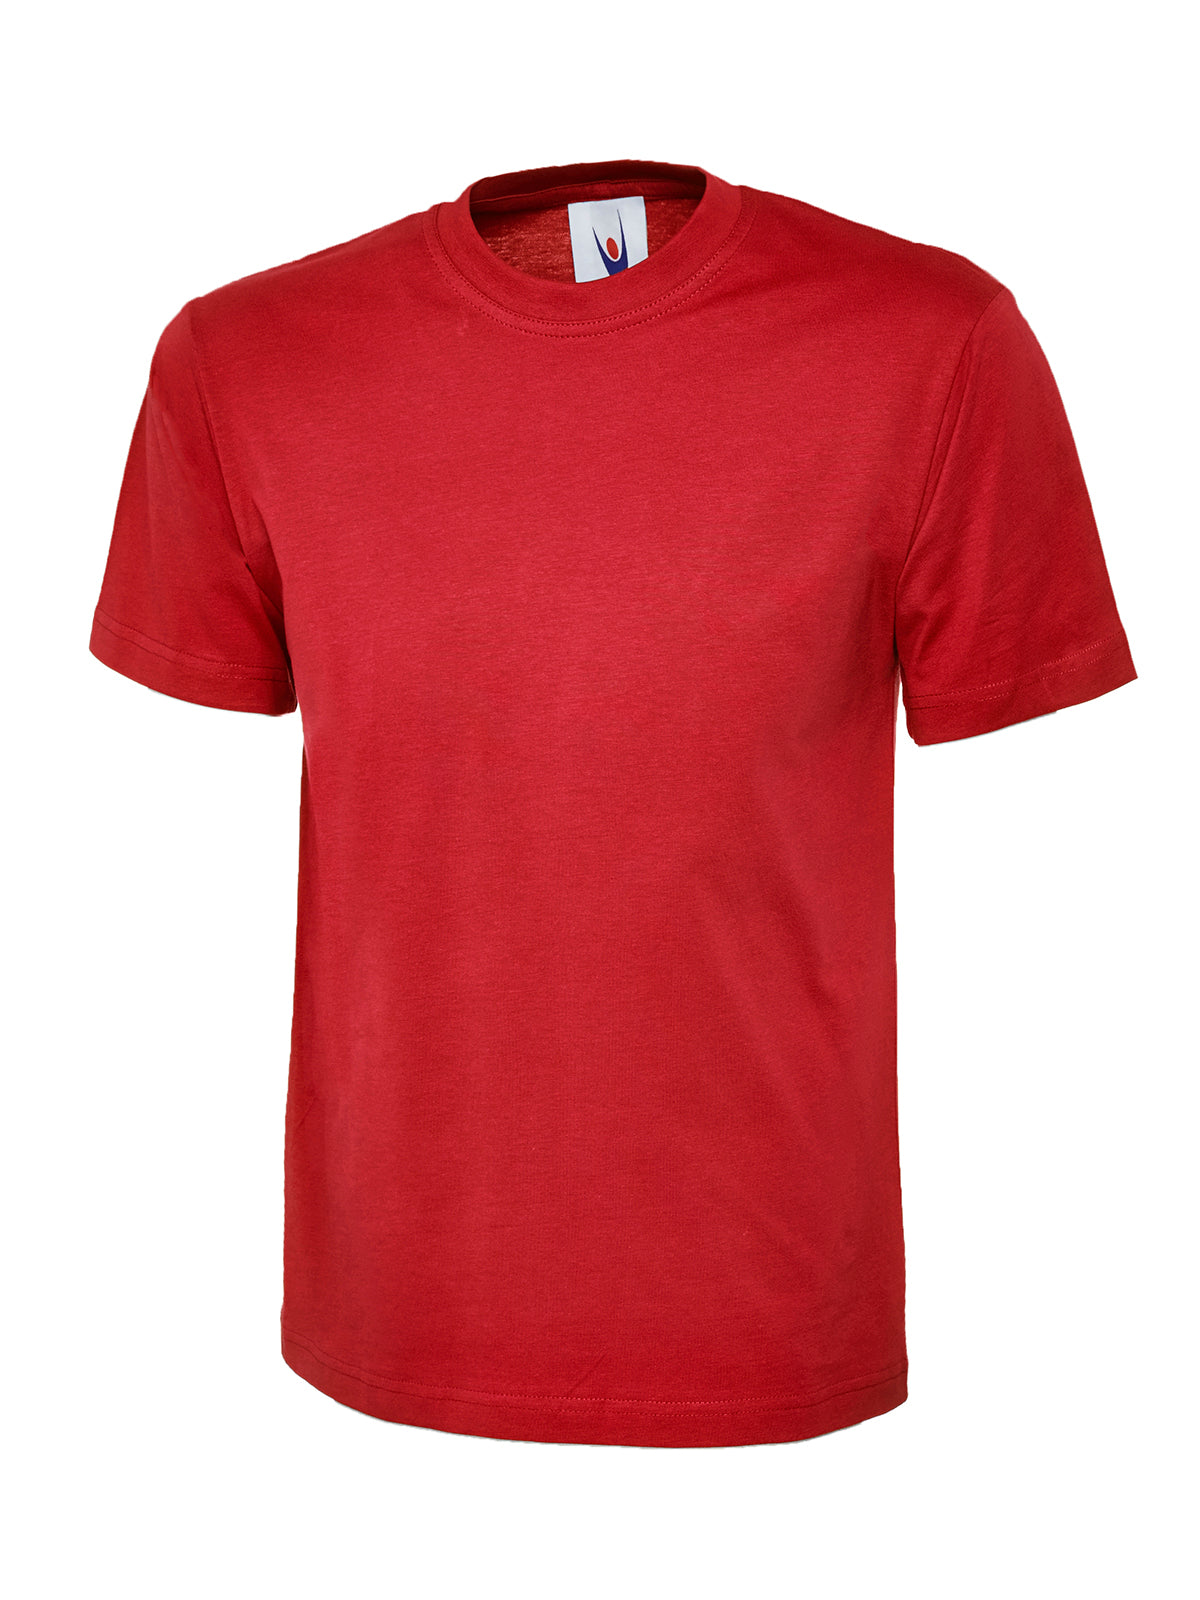 Uneek Premium Unisex T-shirt UC302 - Red